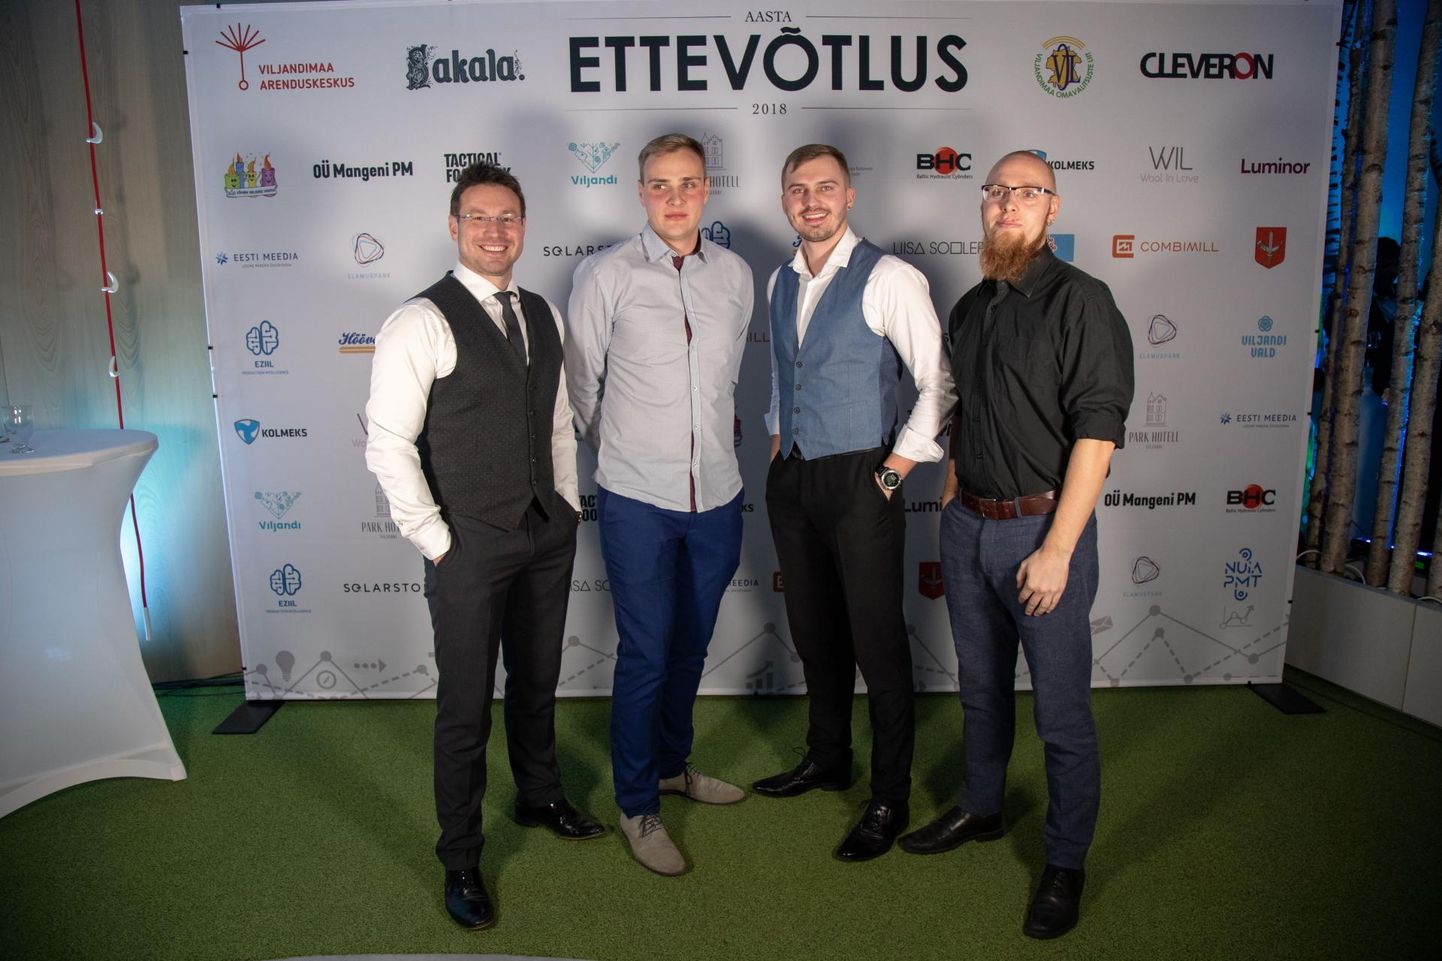 Elamuspanga eestvedajad (vasakult) Kalvi Kants, Sander Kahu, Are Tallmeister ja Are Tints olid ka Viljandimaa ettevõtluse auhinnagala korraldajad. Elamuspank oli loomeauhinna nominentide hulgas.